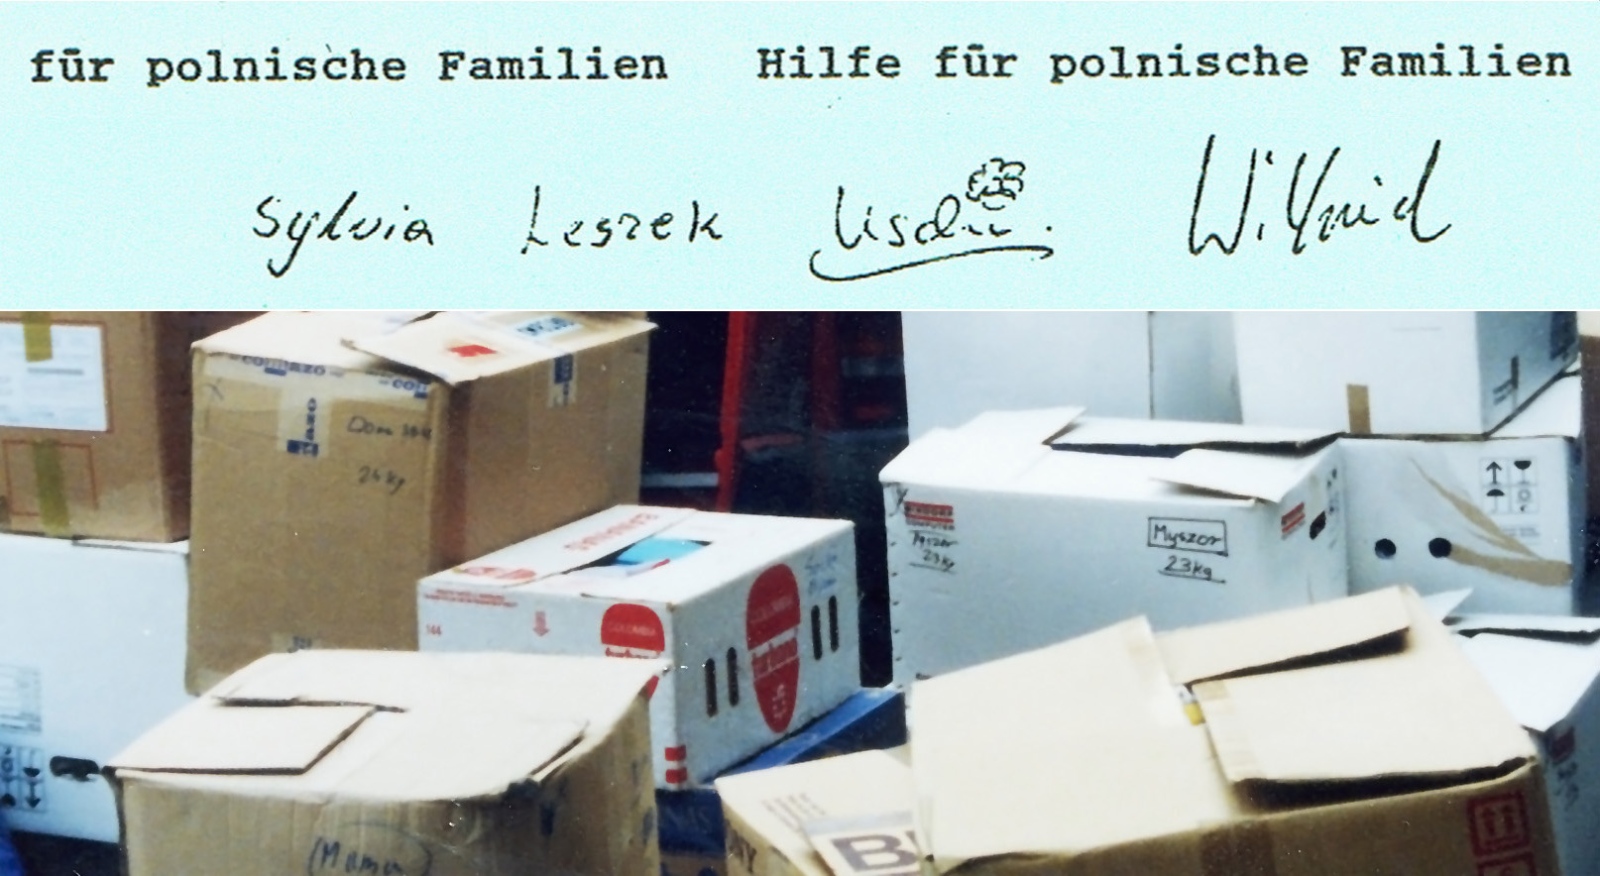 1989-06 Hilfe für polnische Familien